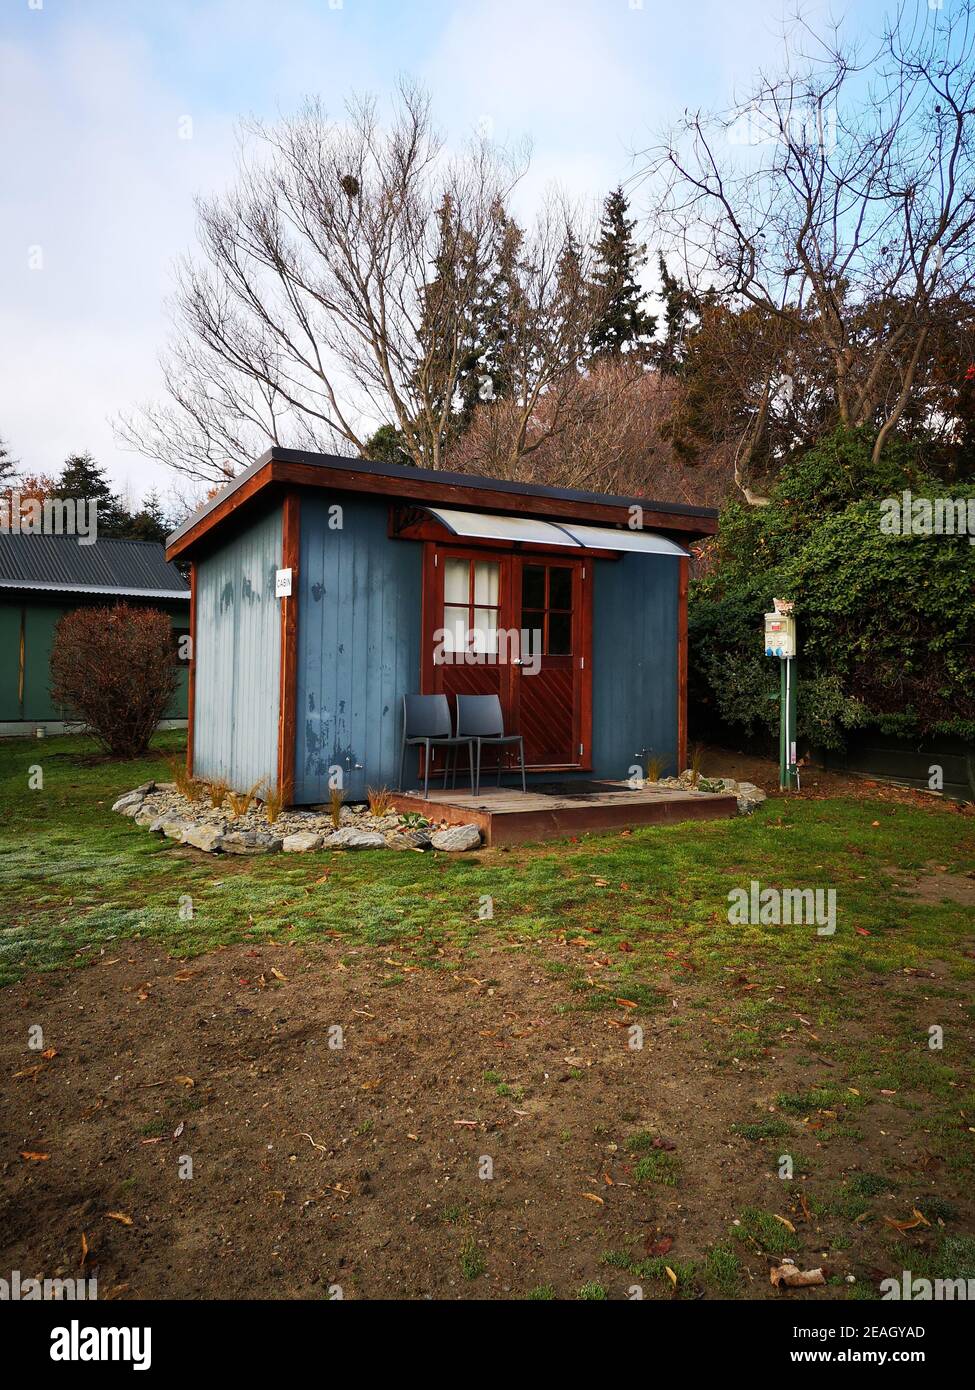 Bild von einem kleinen Haus in Neuseeland Stockfoto